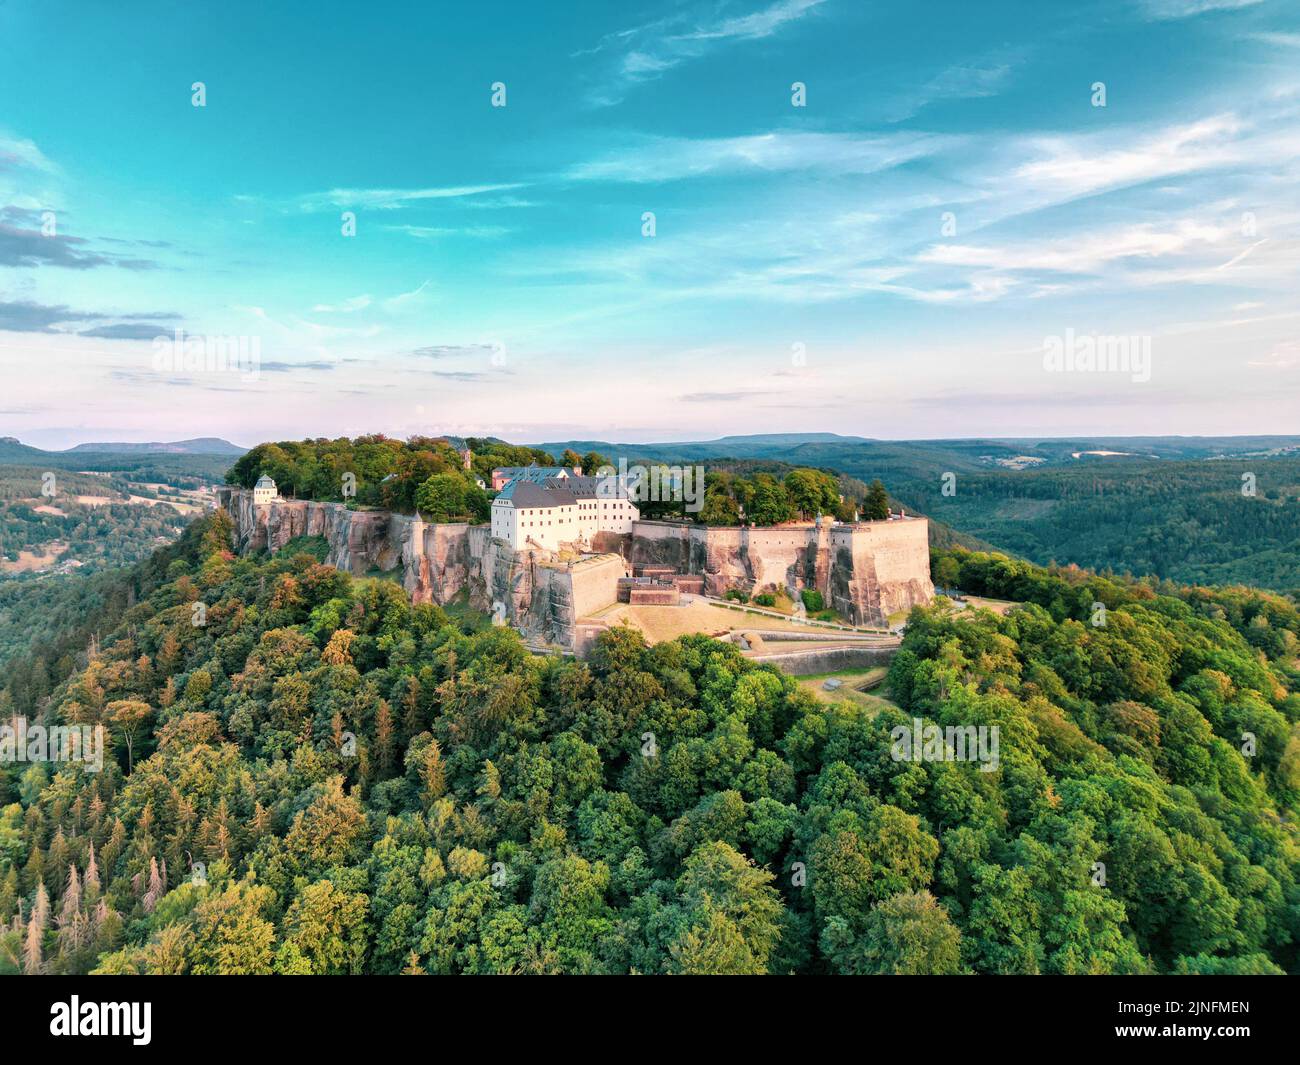 Una hermosa vista de la Fortaleza de Konigstein en una colina en la Suiza sajona, Alemania Foto de stock